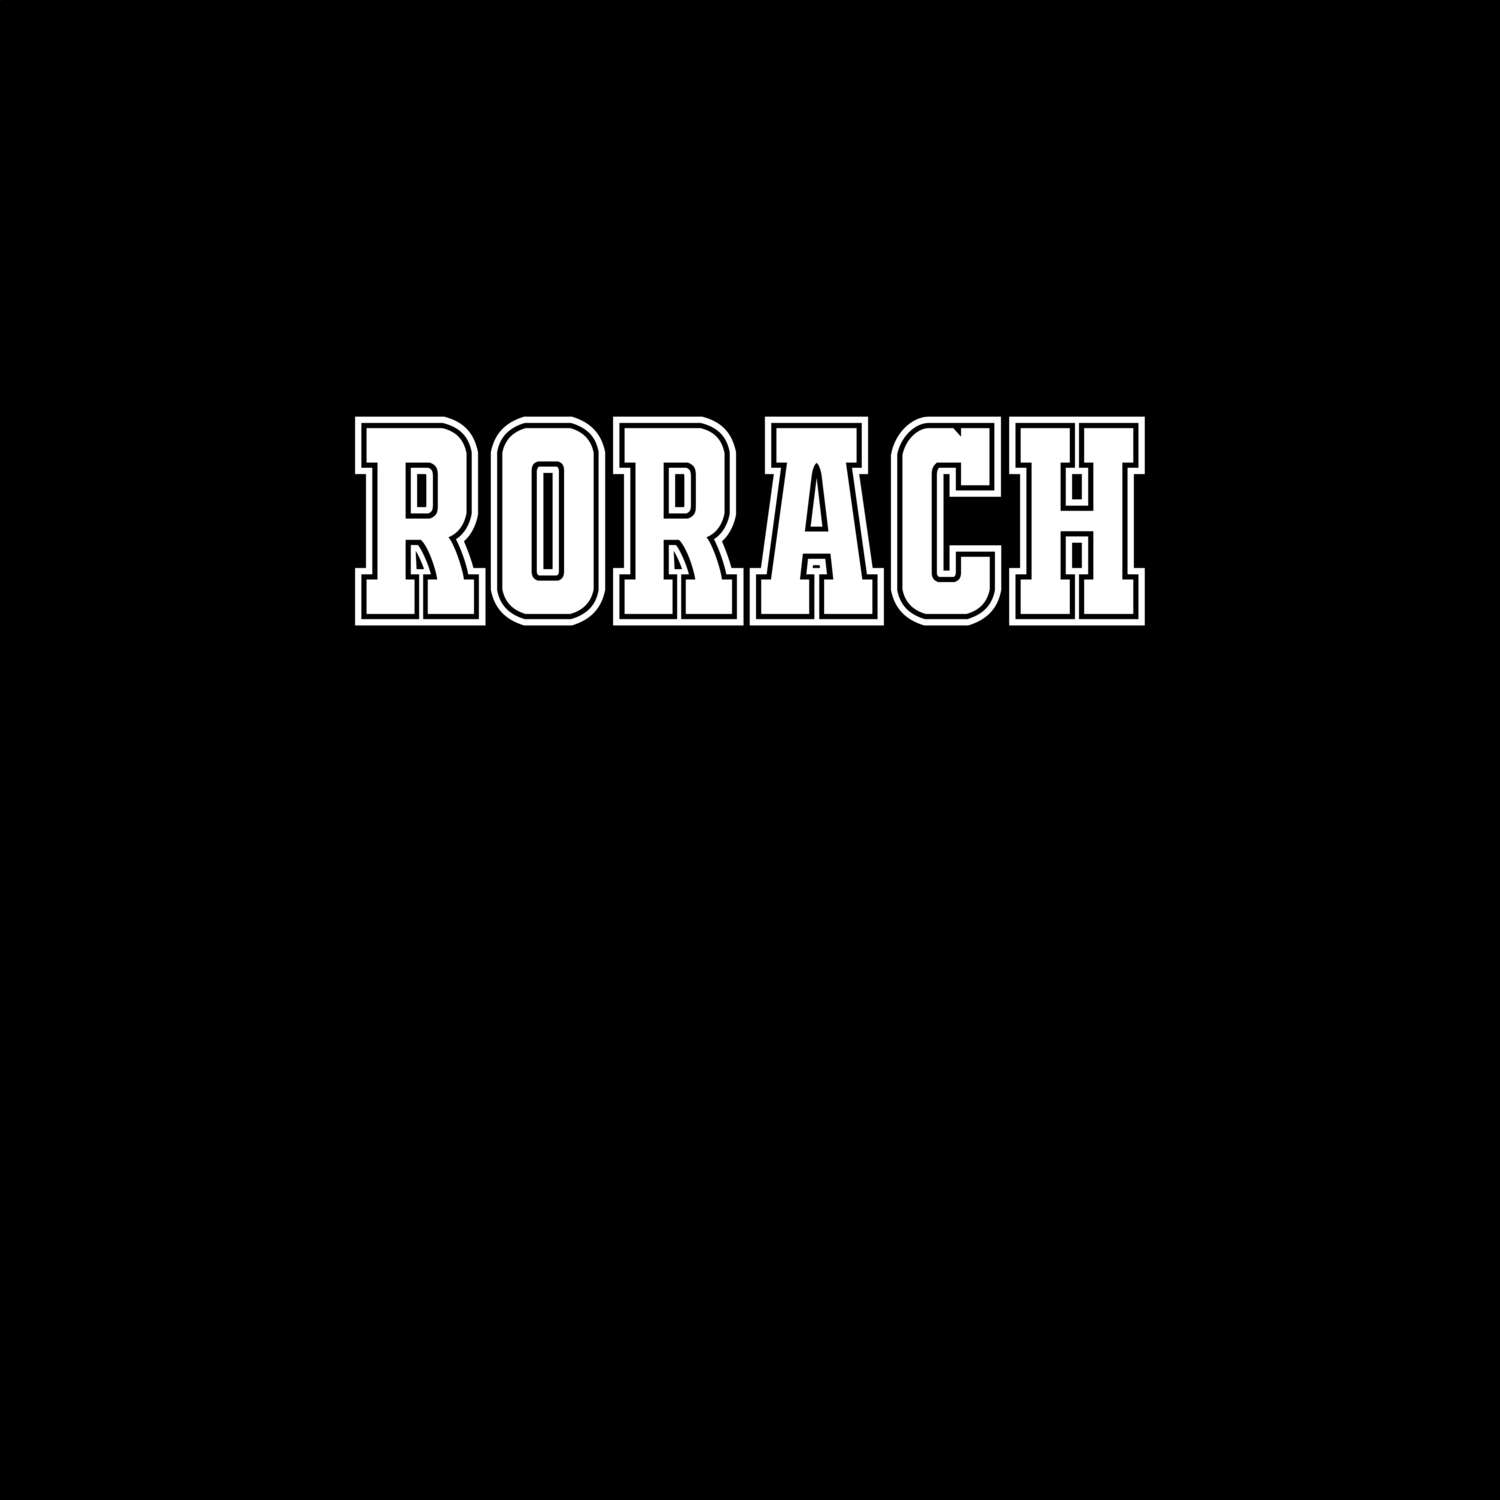 Rorach T-Shirt »Classic«